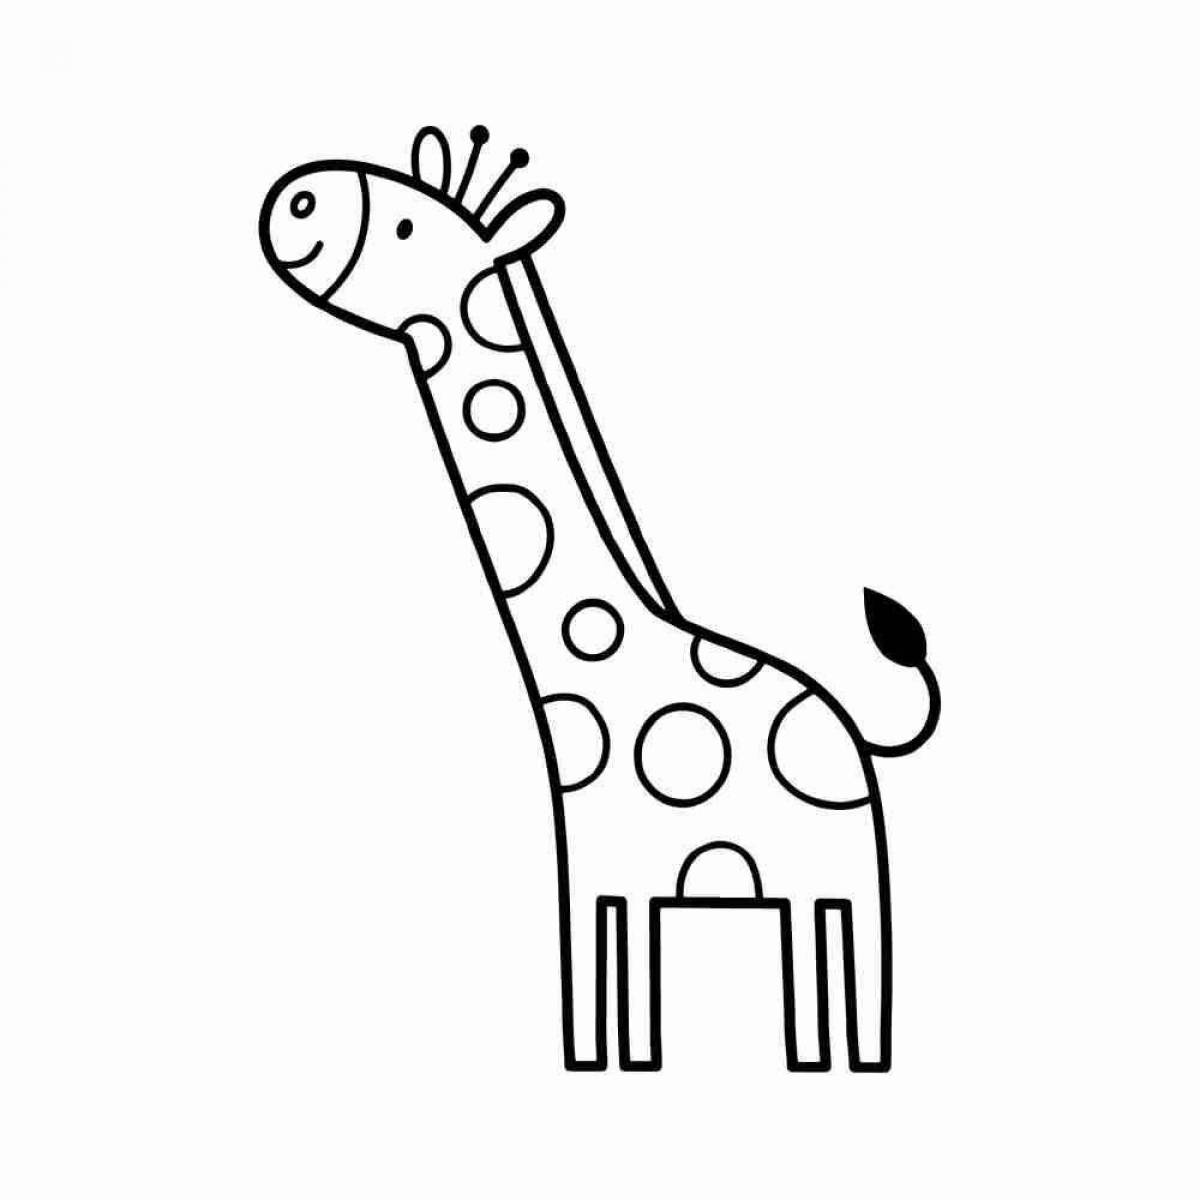 Красочная раскраска жирафа для детей 3-4 лет